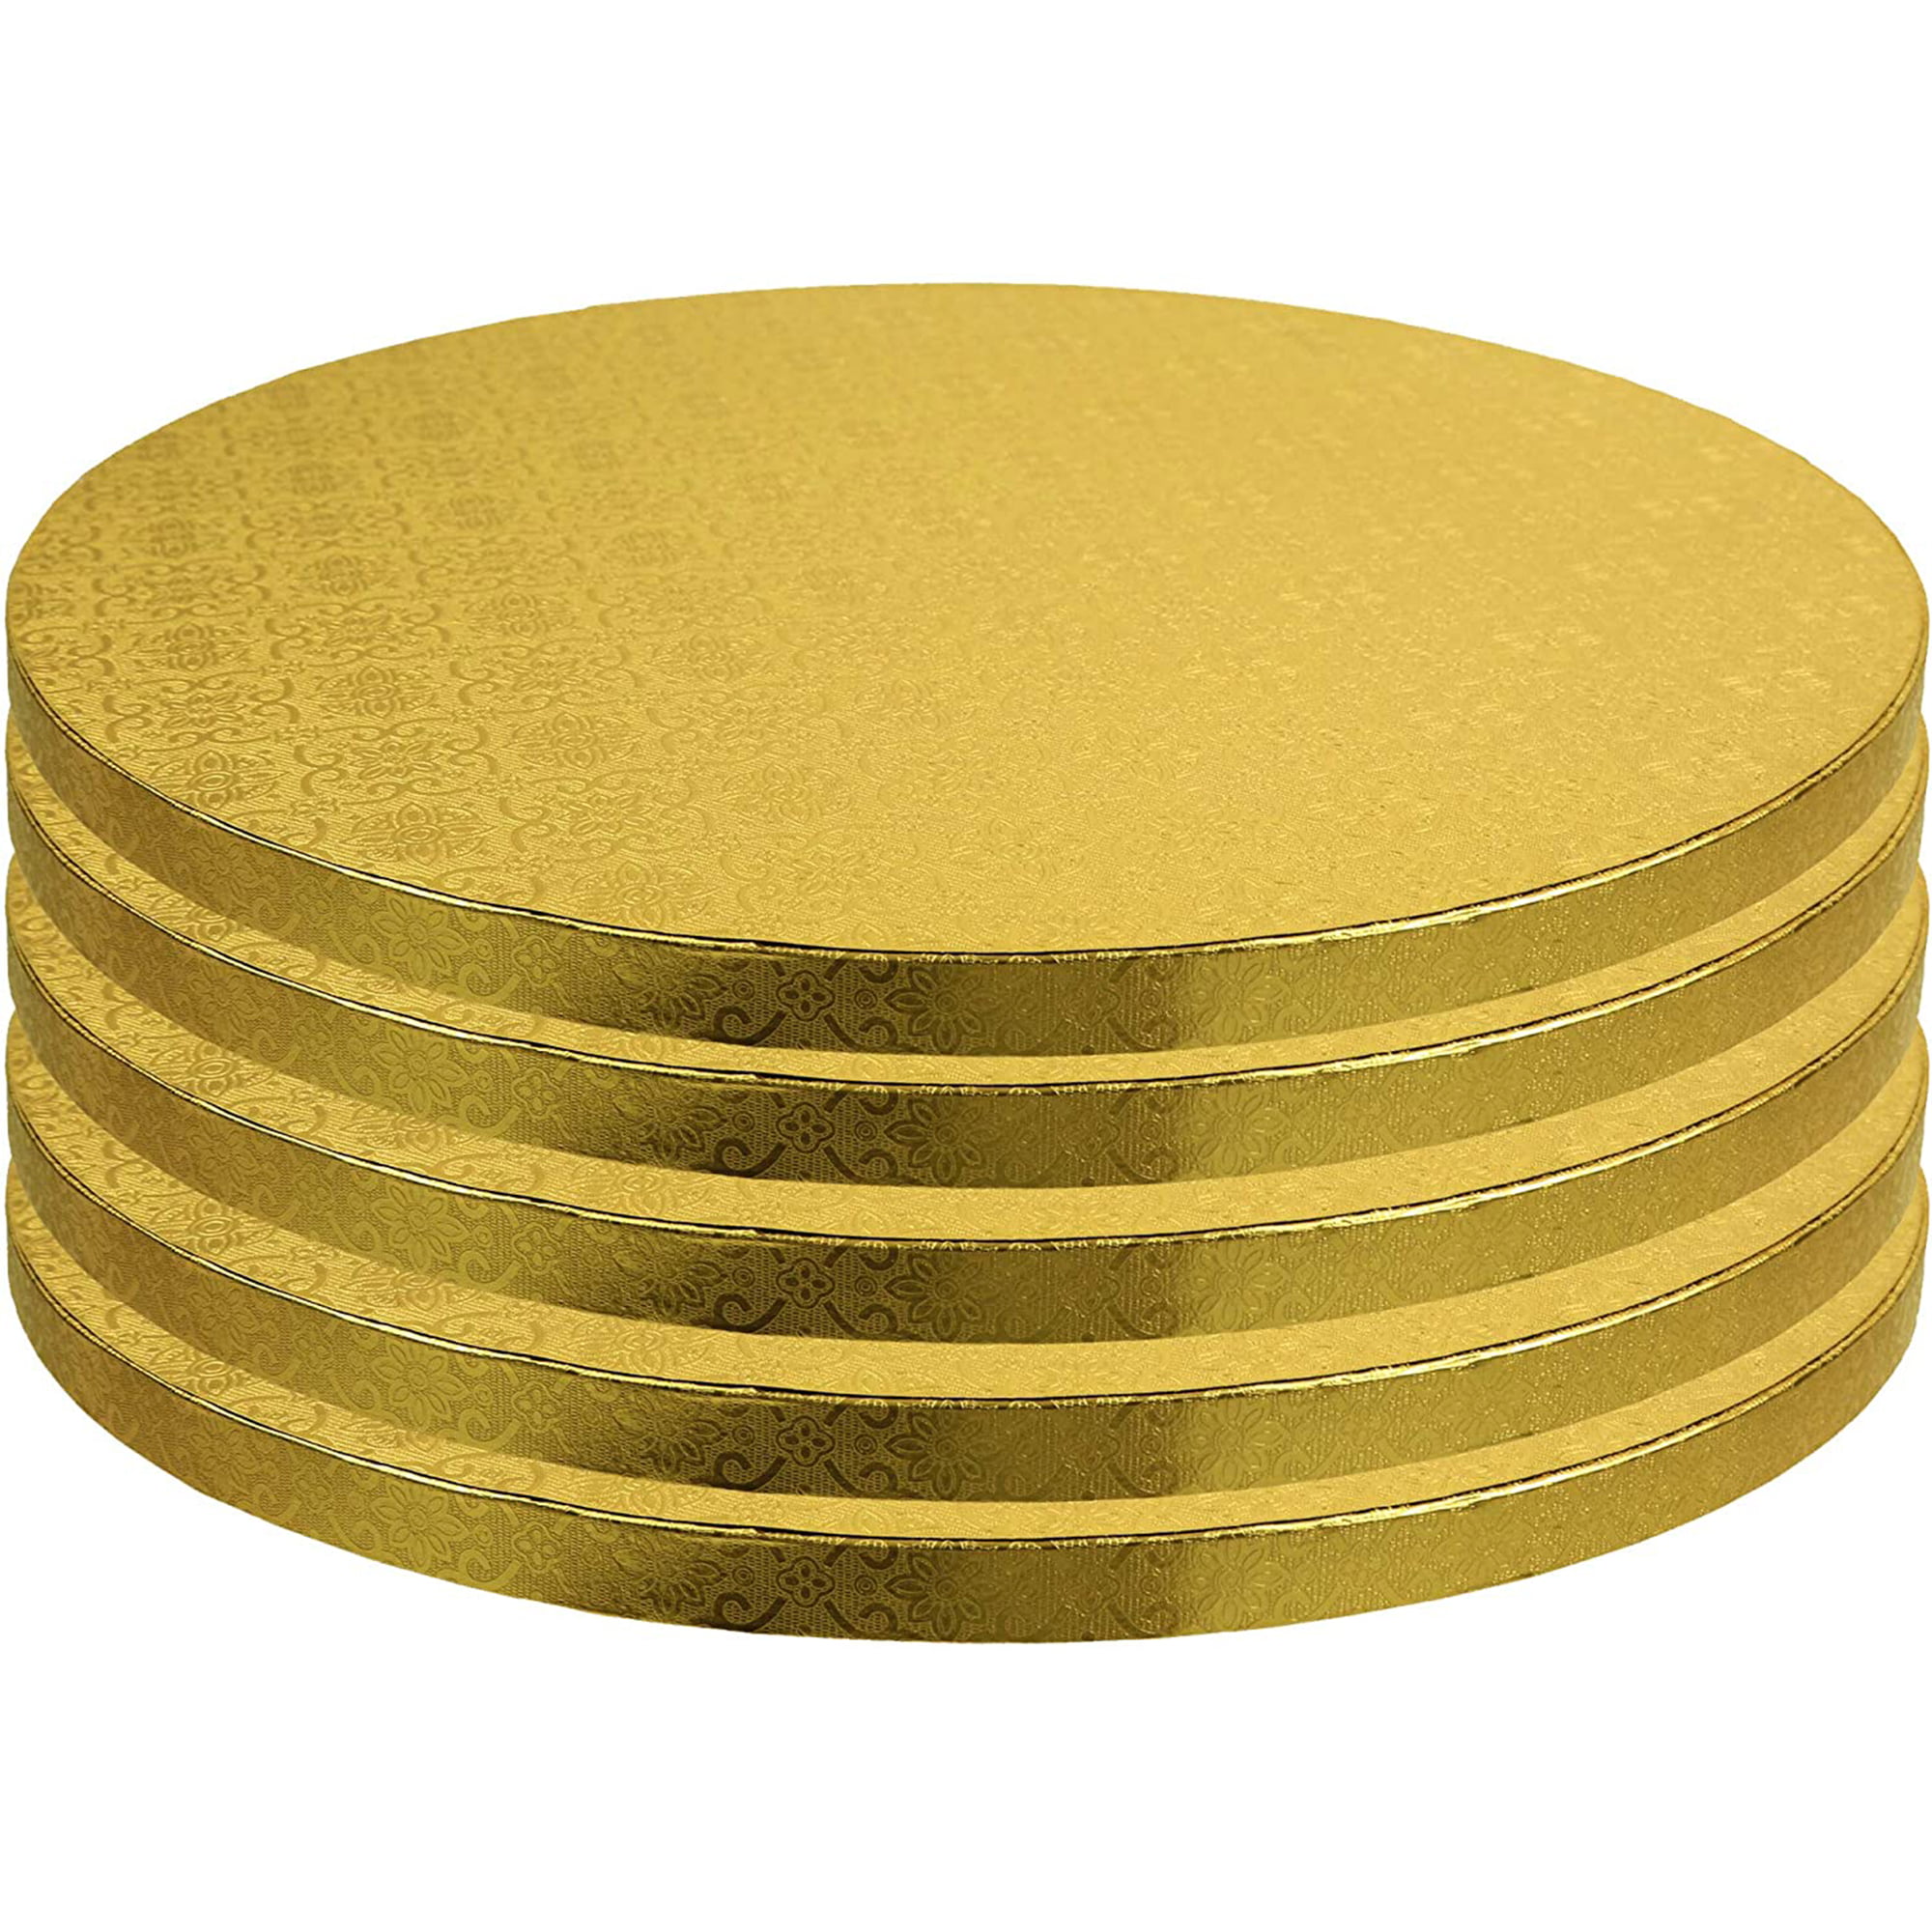 10pcs 6" Round Cake Boards 6 Inches Diameter Gold Metallic Circle Cardboard Base 